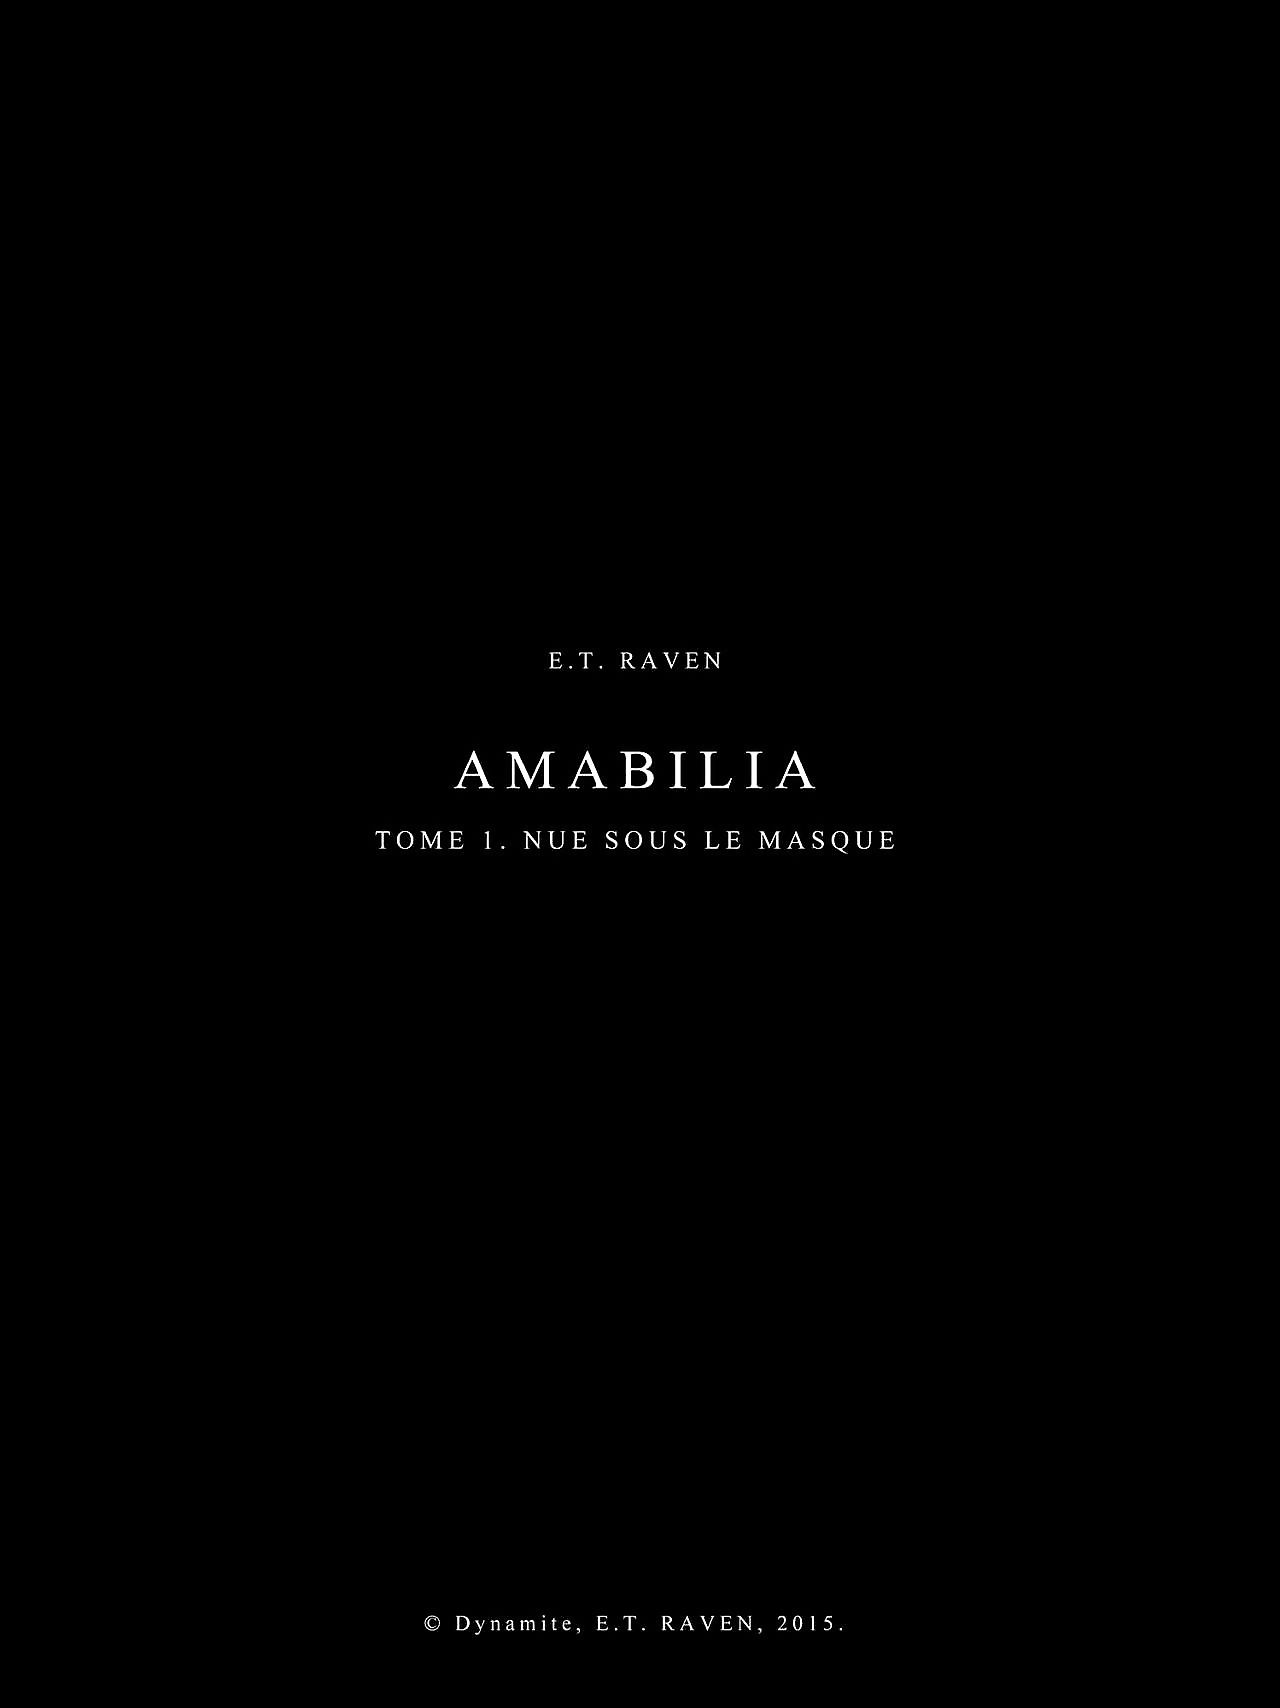 Amabilia - Middle 1